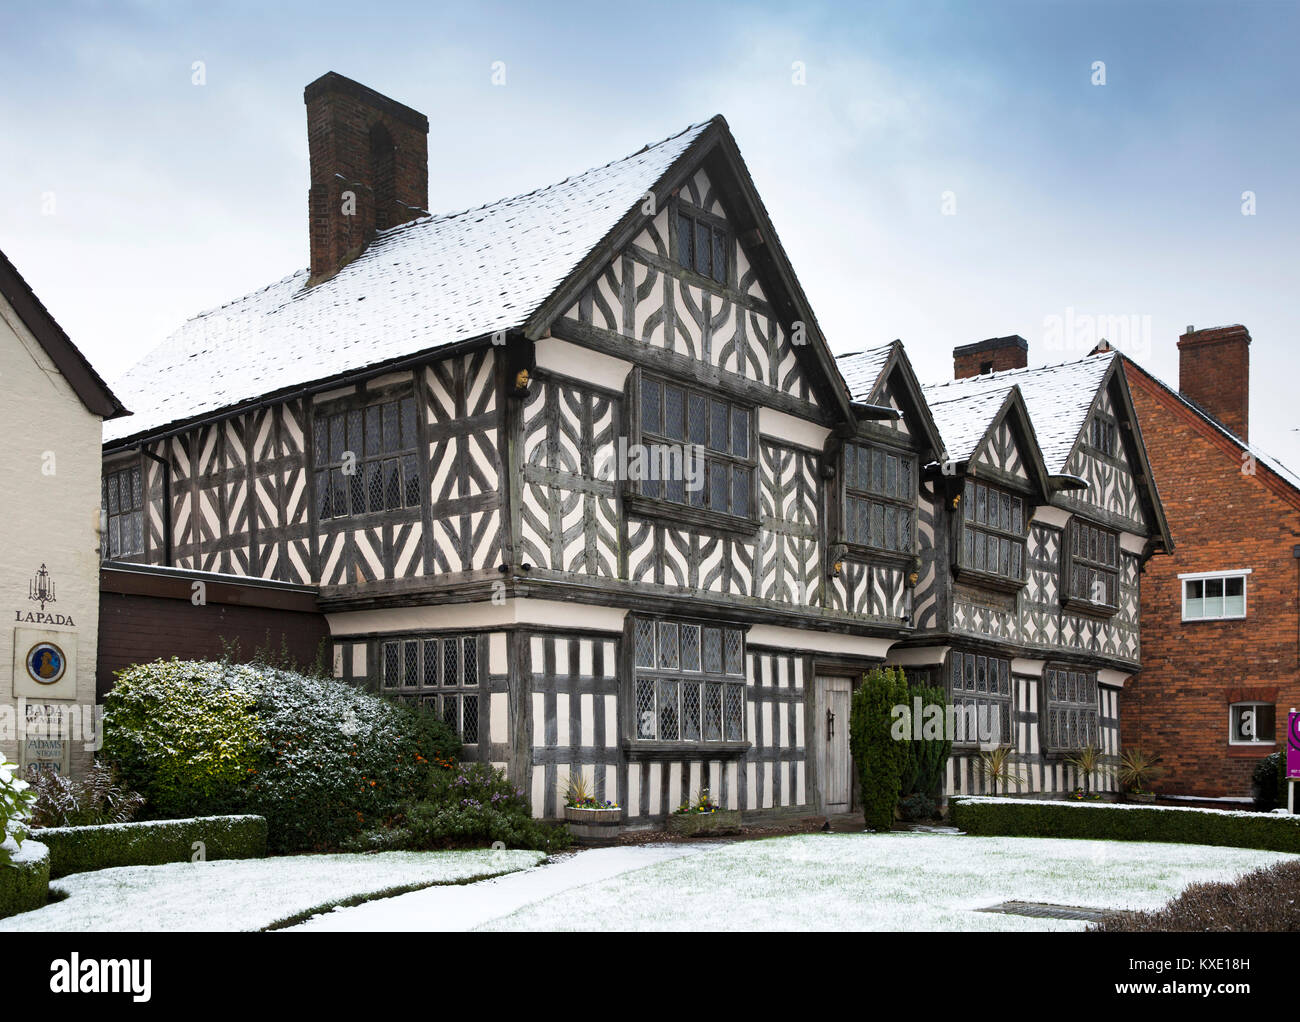 Regno Unito, Inghilterra, Cheshire, Nantwich, London Road, 1577 chiese Mansion, uno degli edifici più antichi del centro lagunare Foto Stock